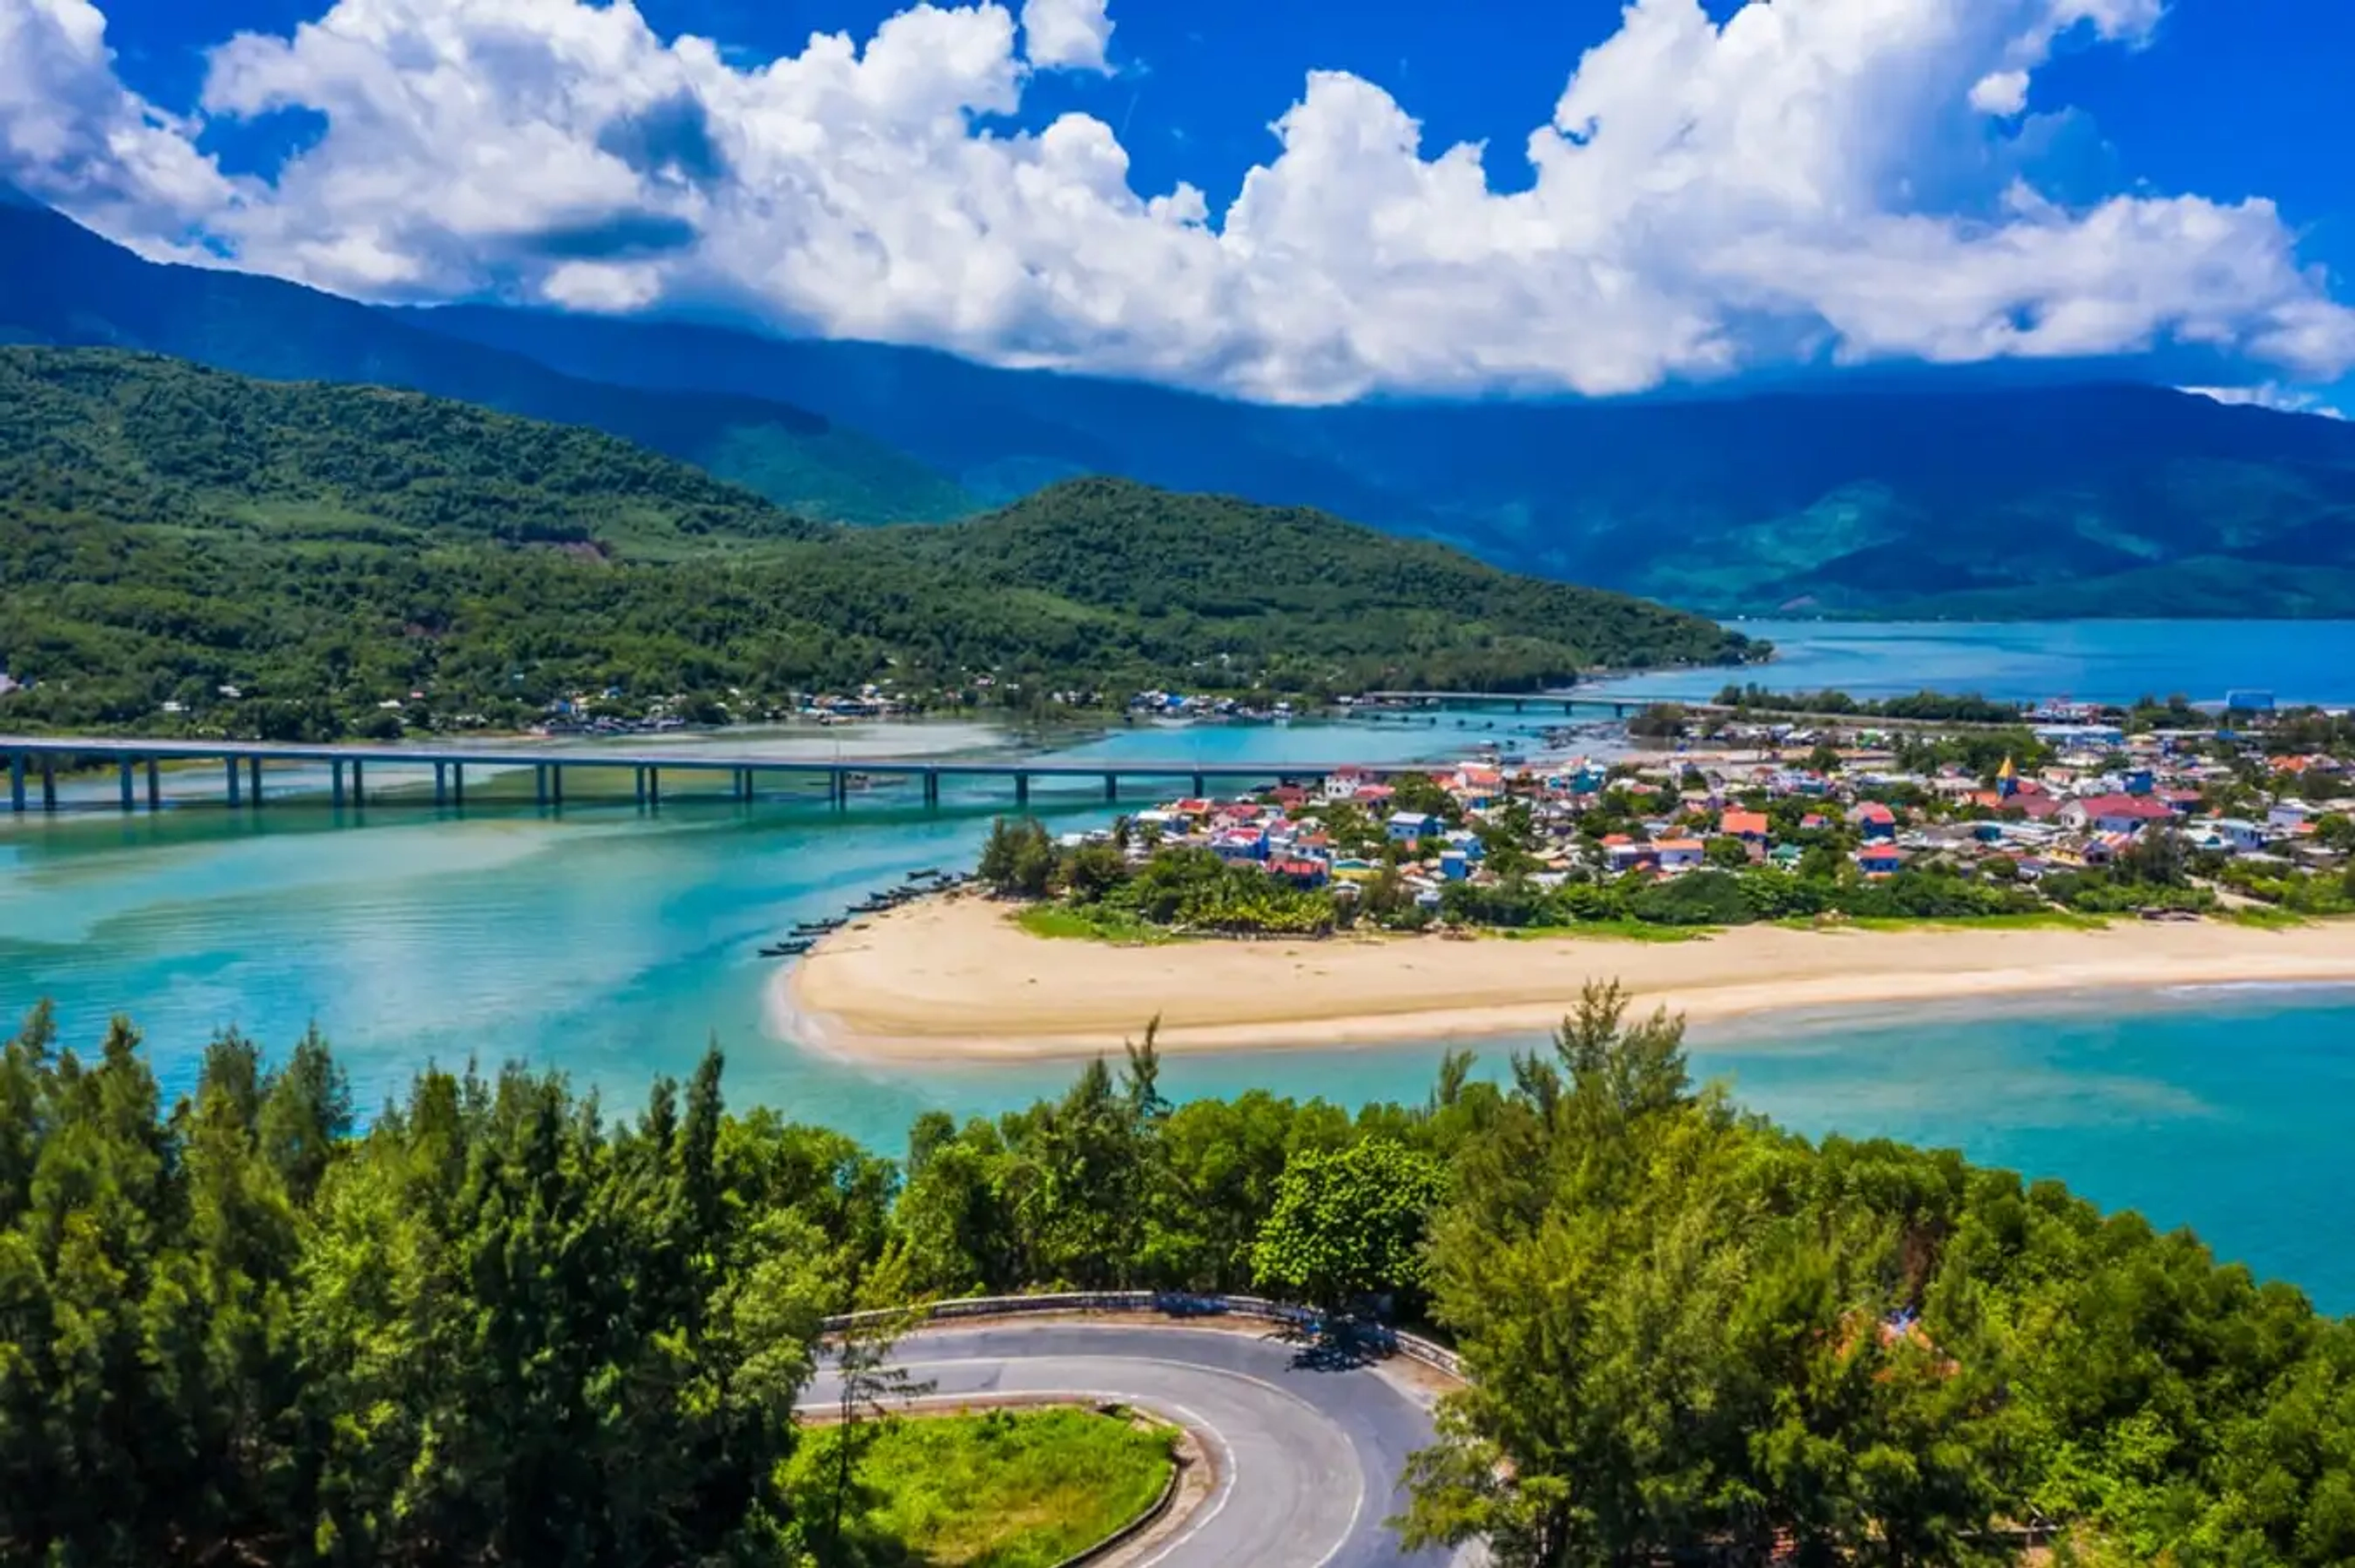 Vịnh Lăng Cô Huế - Một trong những vịnh biển đẹp nhất thế giới ở cùng đất cố đô